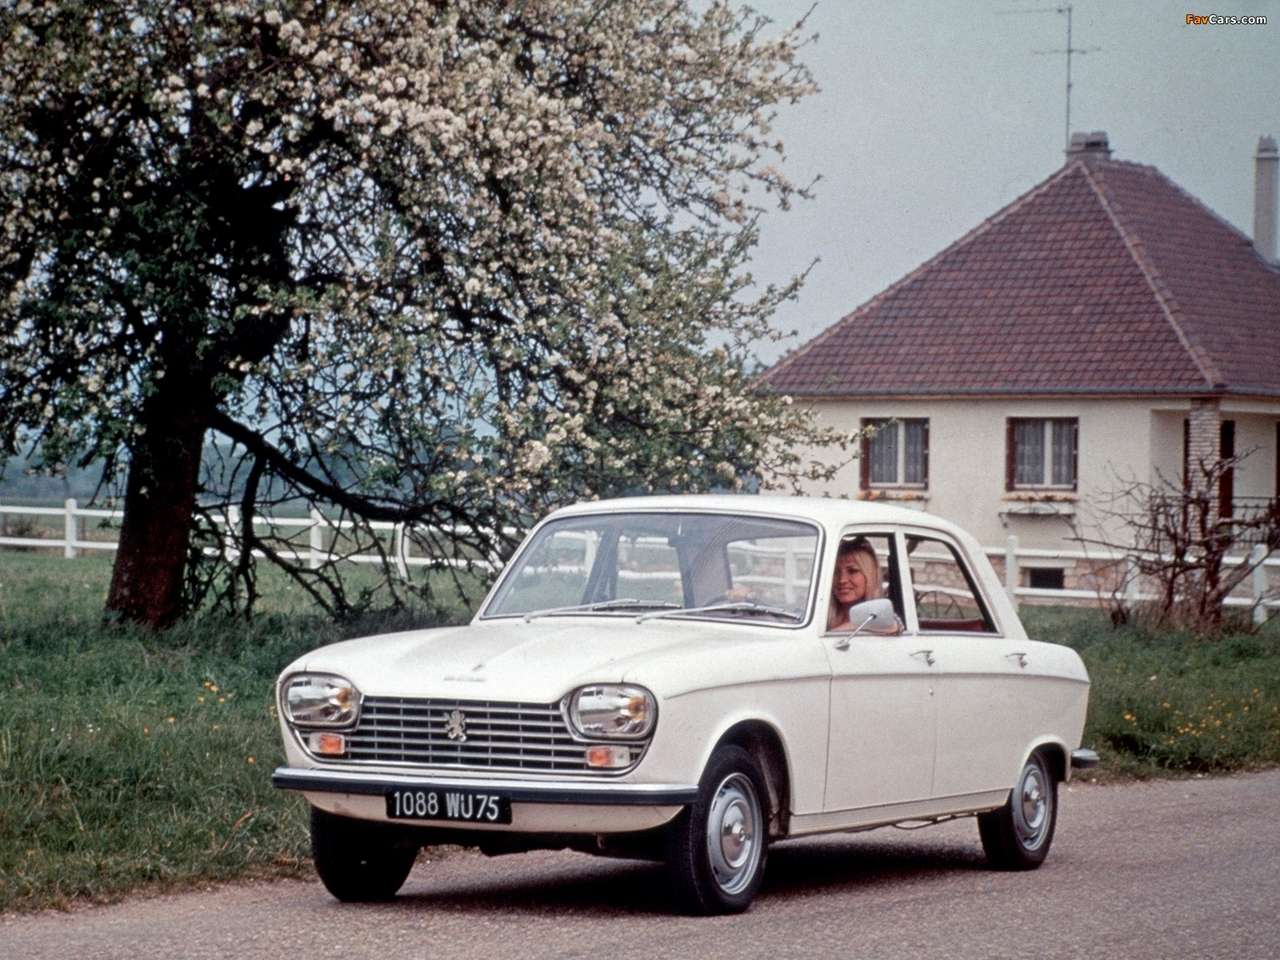 1965 Peugeot 204. online puzzle